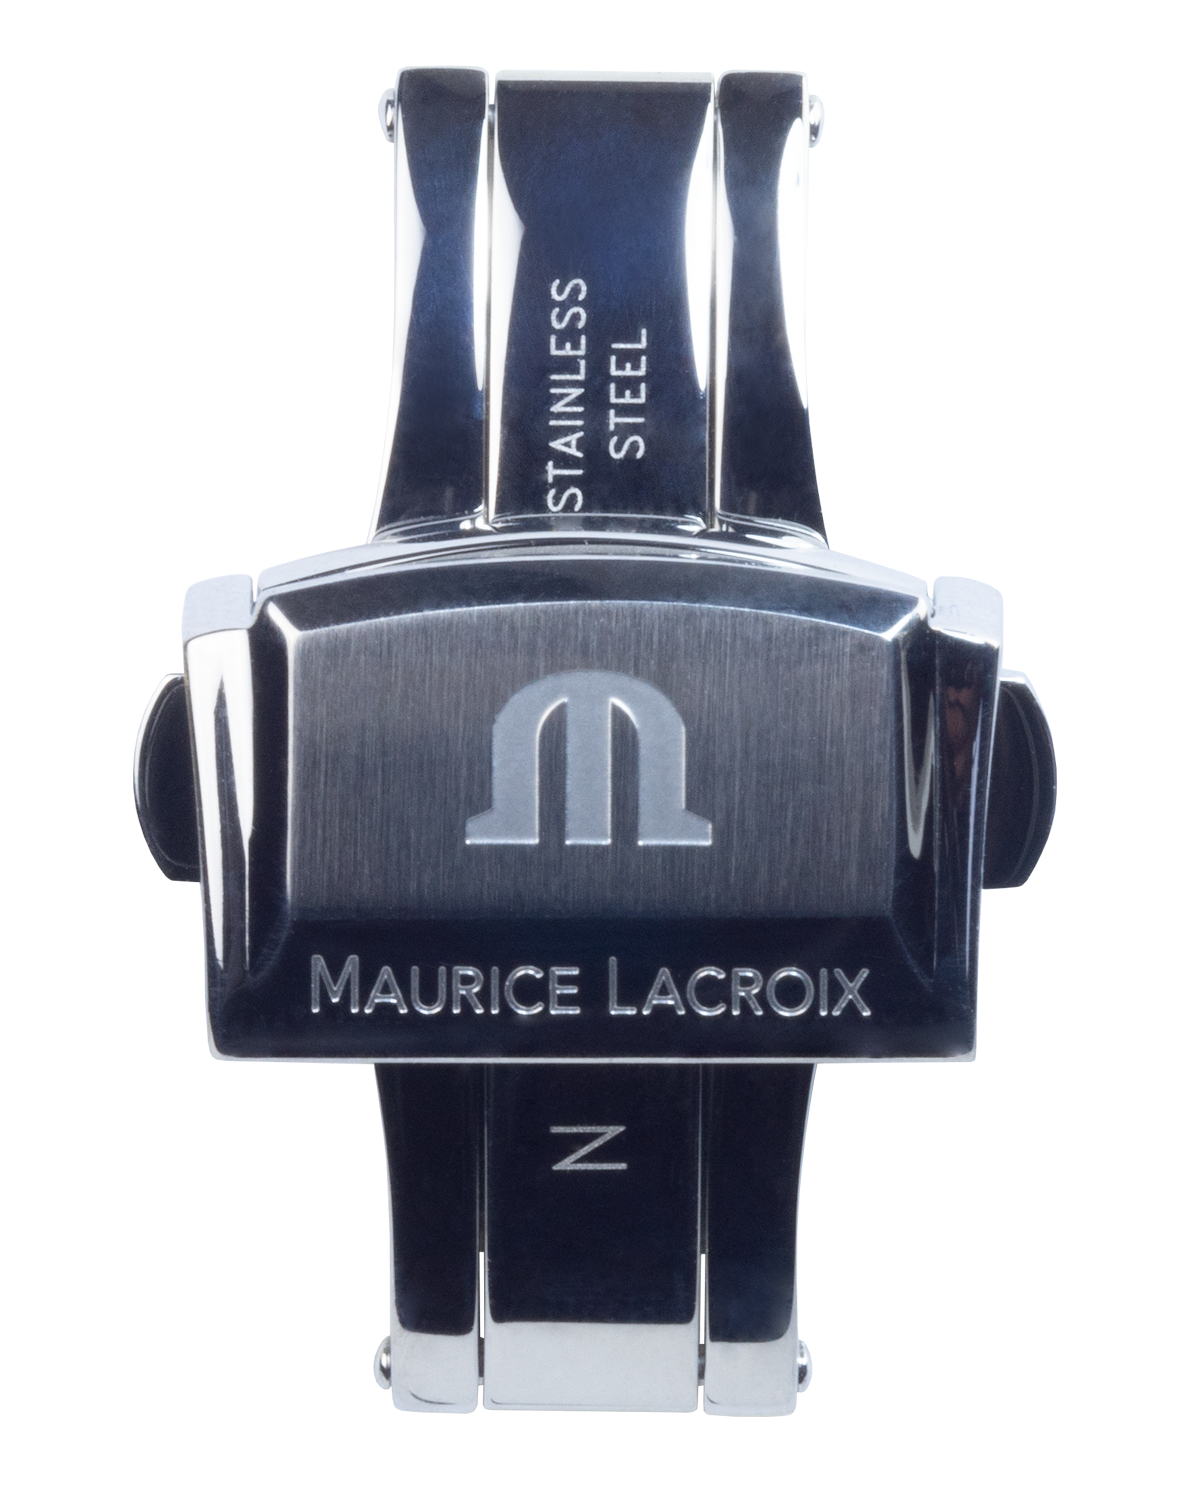 Maurice Lacroix Pontos deployment clasp 18mm